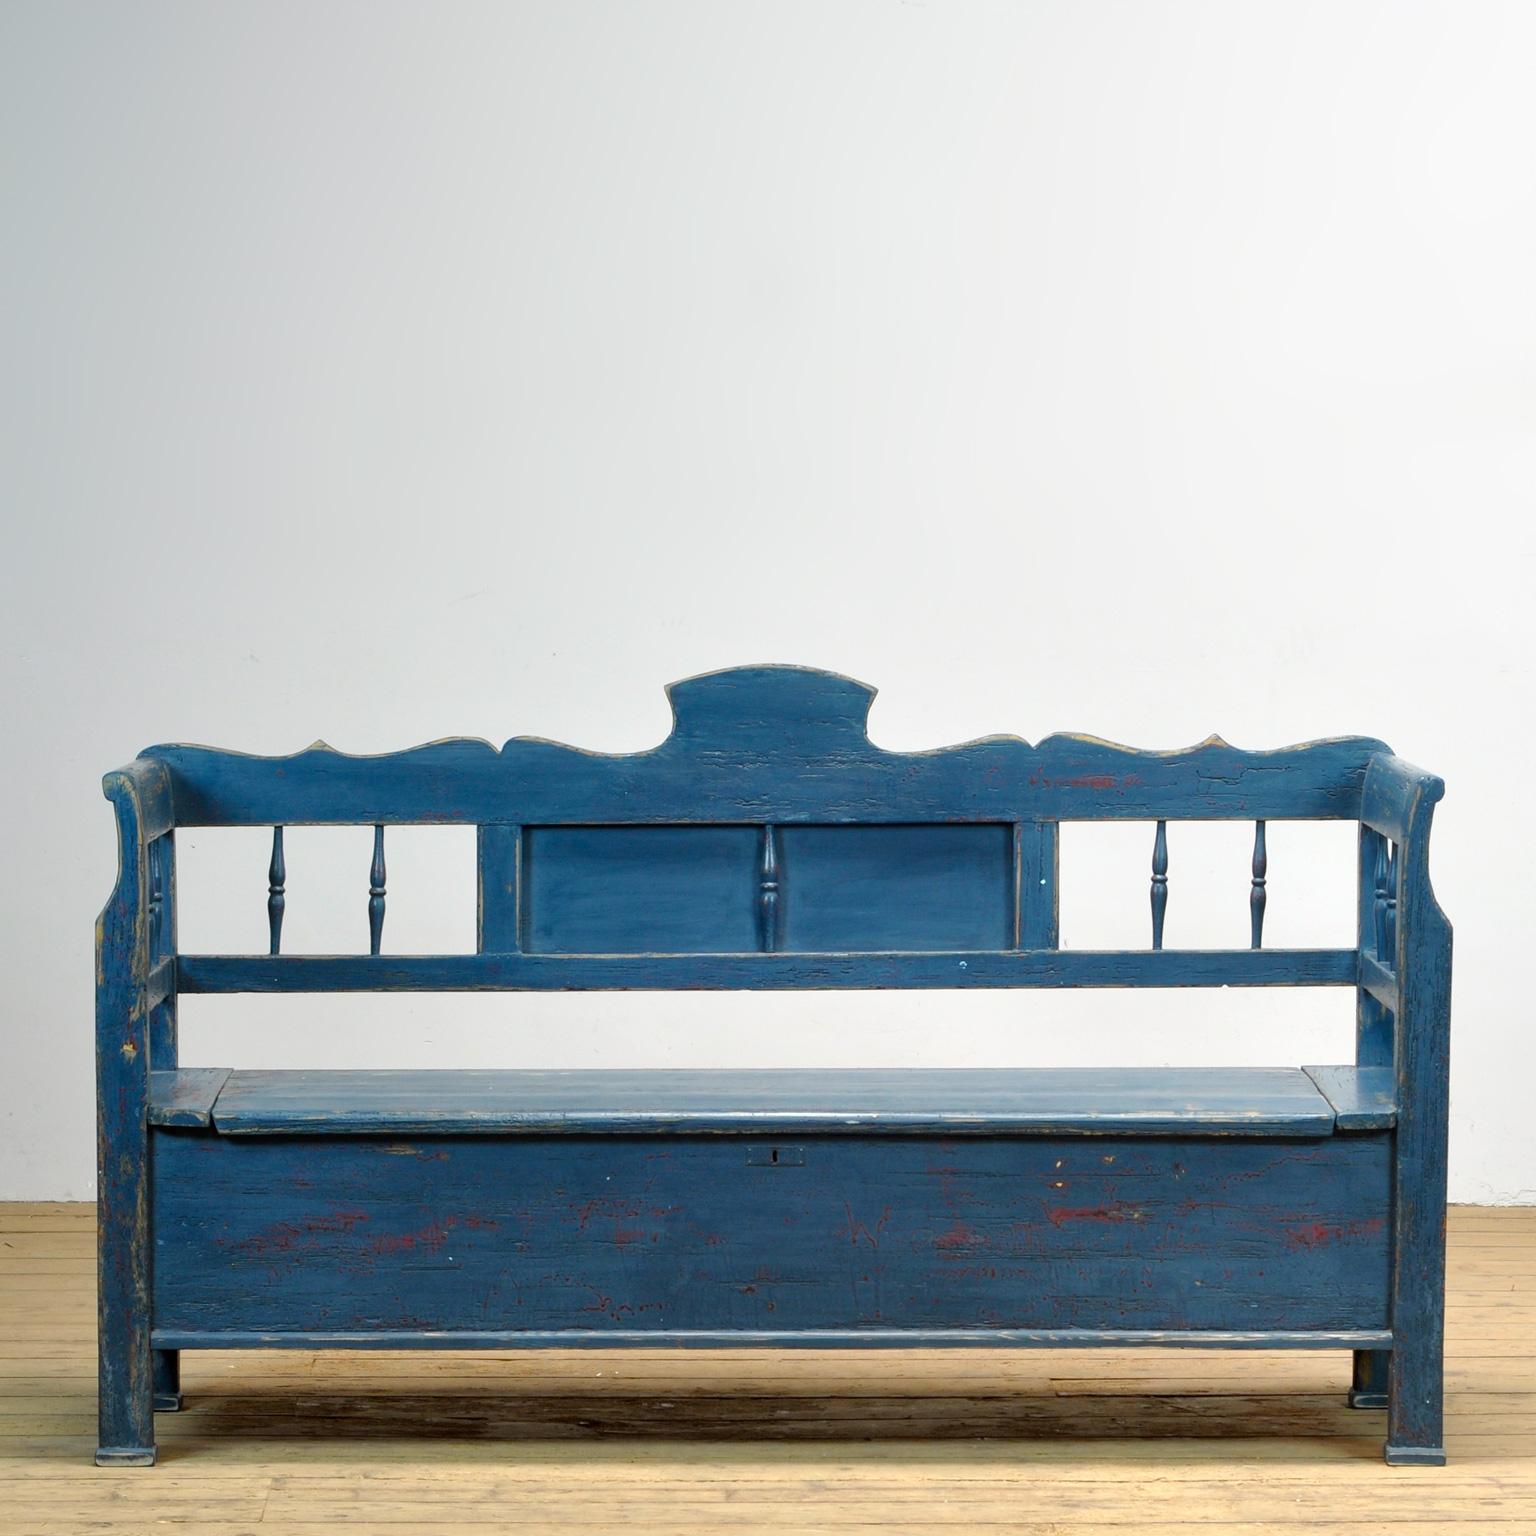 Un charmant banc de Hongrie avec la peinture d'origine. Au fil du temps et de l'utilisation, la peinture bleue s'est usée par endroits jusqu'au bois. L'espace de rangement sous le siège est divisé en trois compartiments. Le banc est stable et